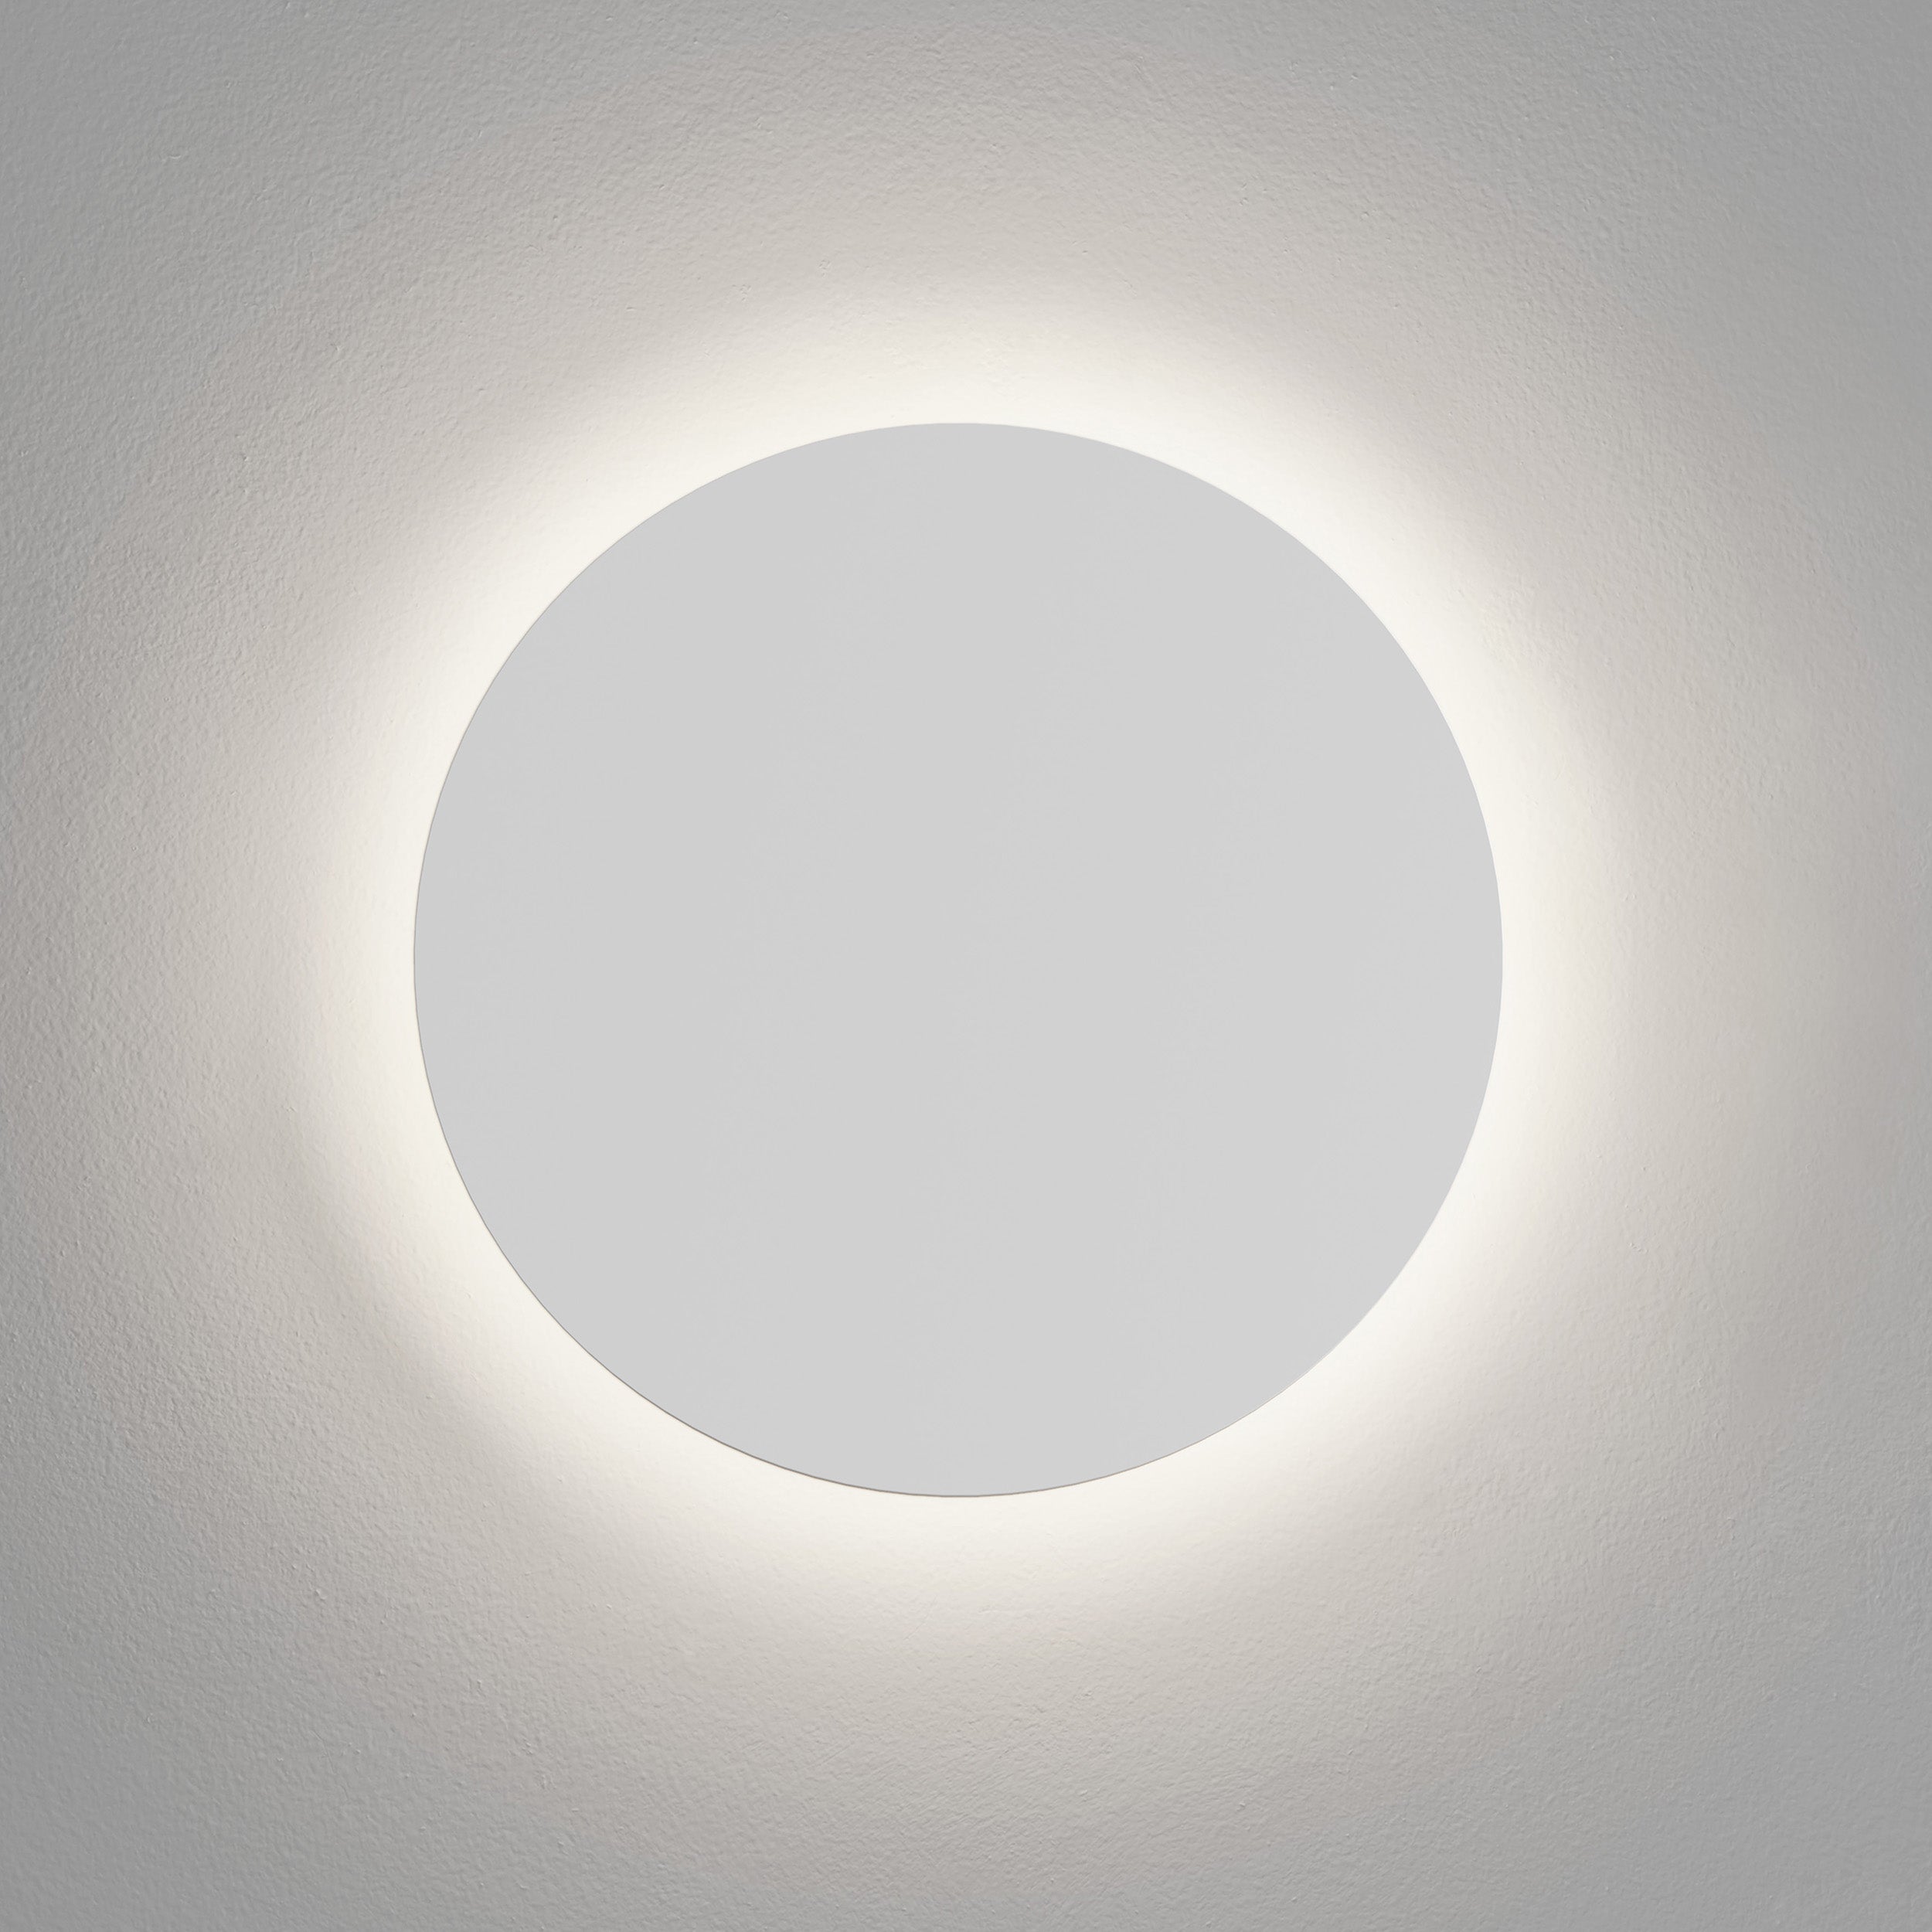 Astro Lighting Eclipse